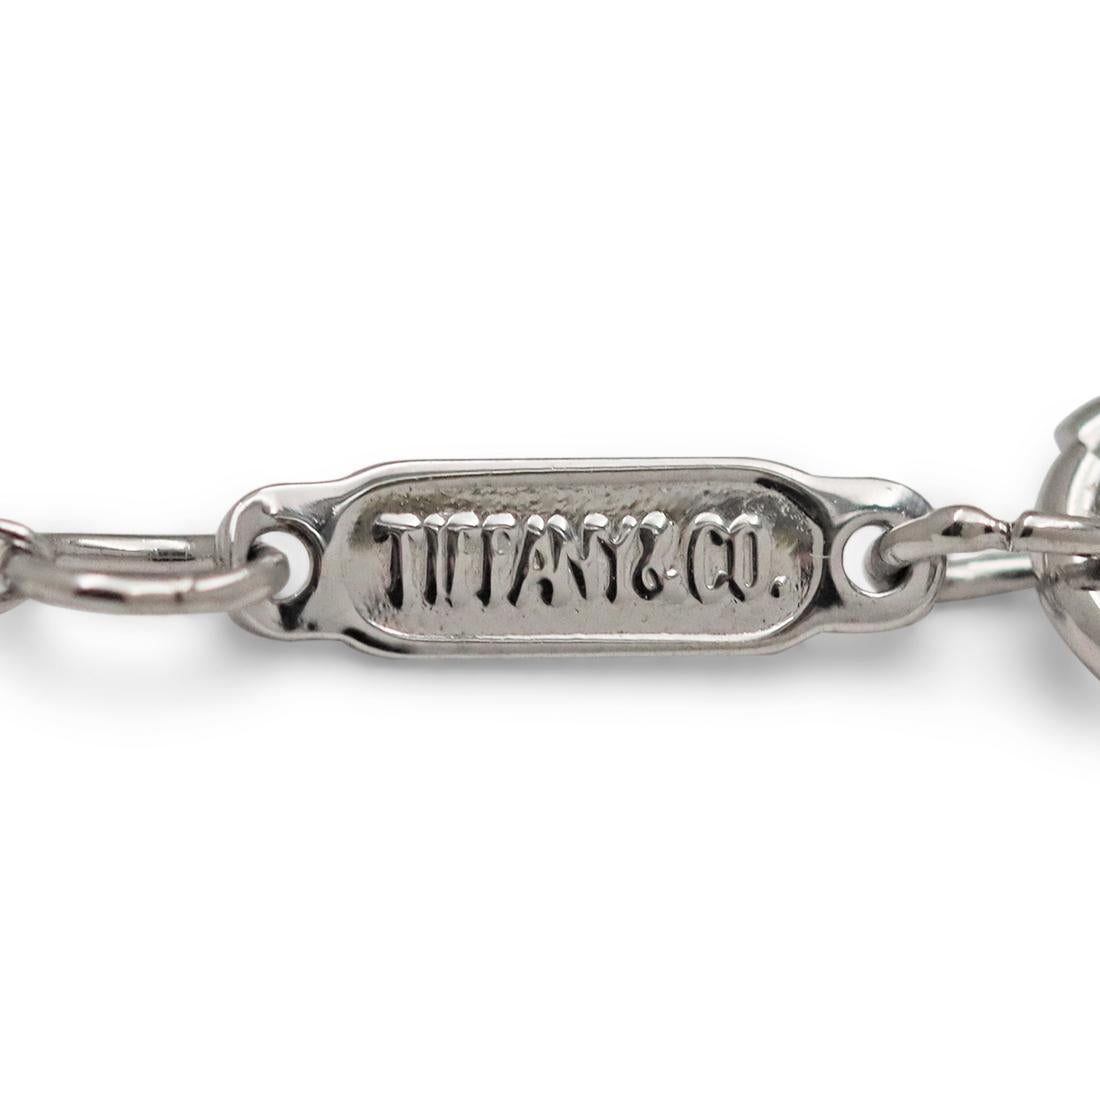 Brilliant Cut Tiffany & Co. Victoria Platinum and Diamond Pendant Necklace, Medium